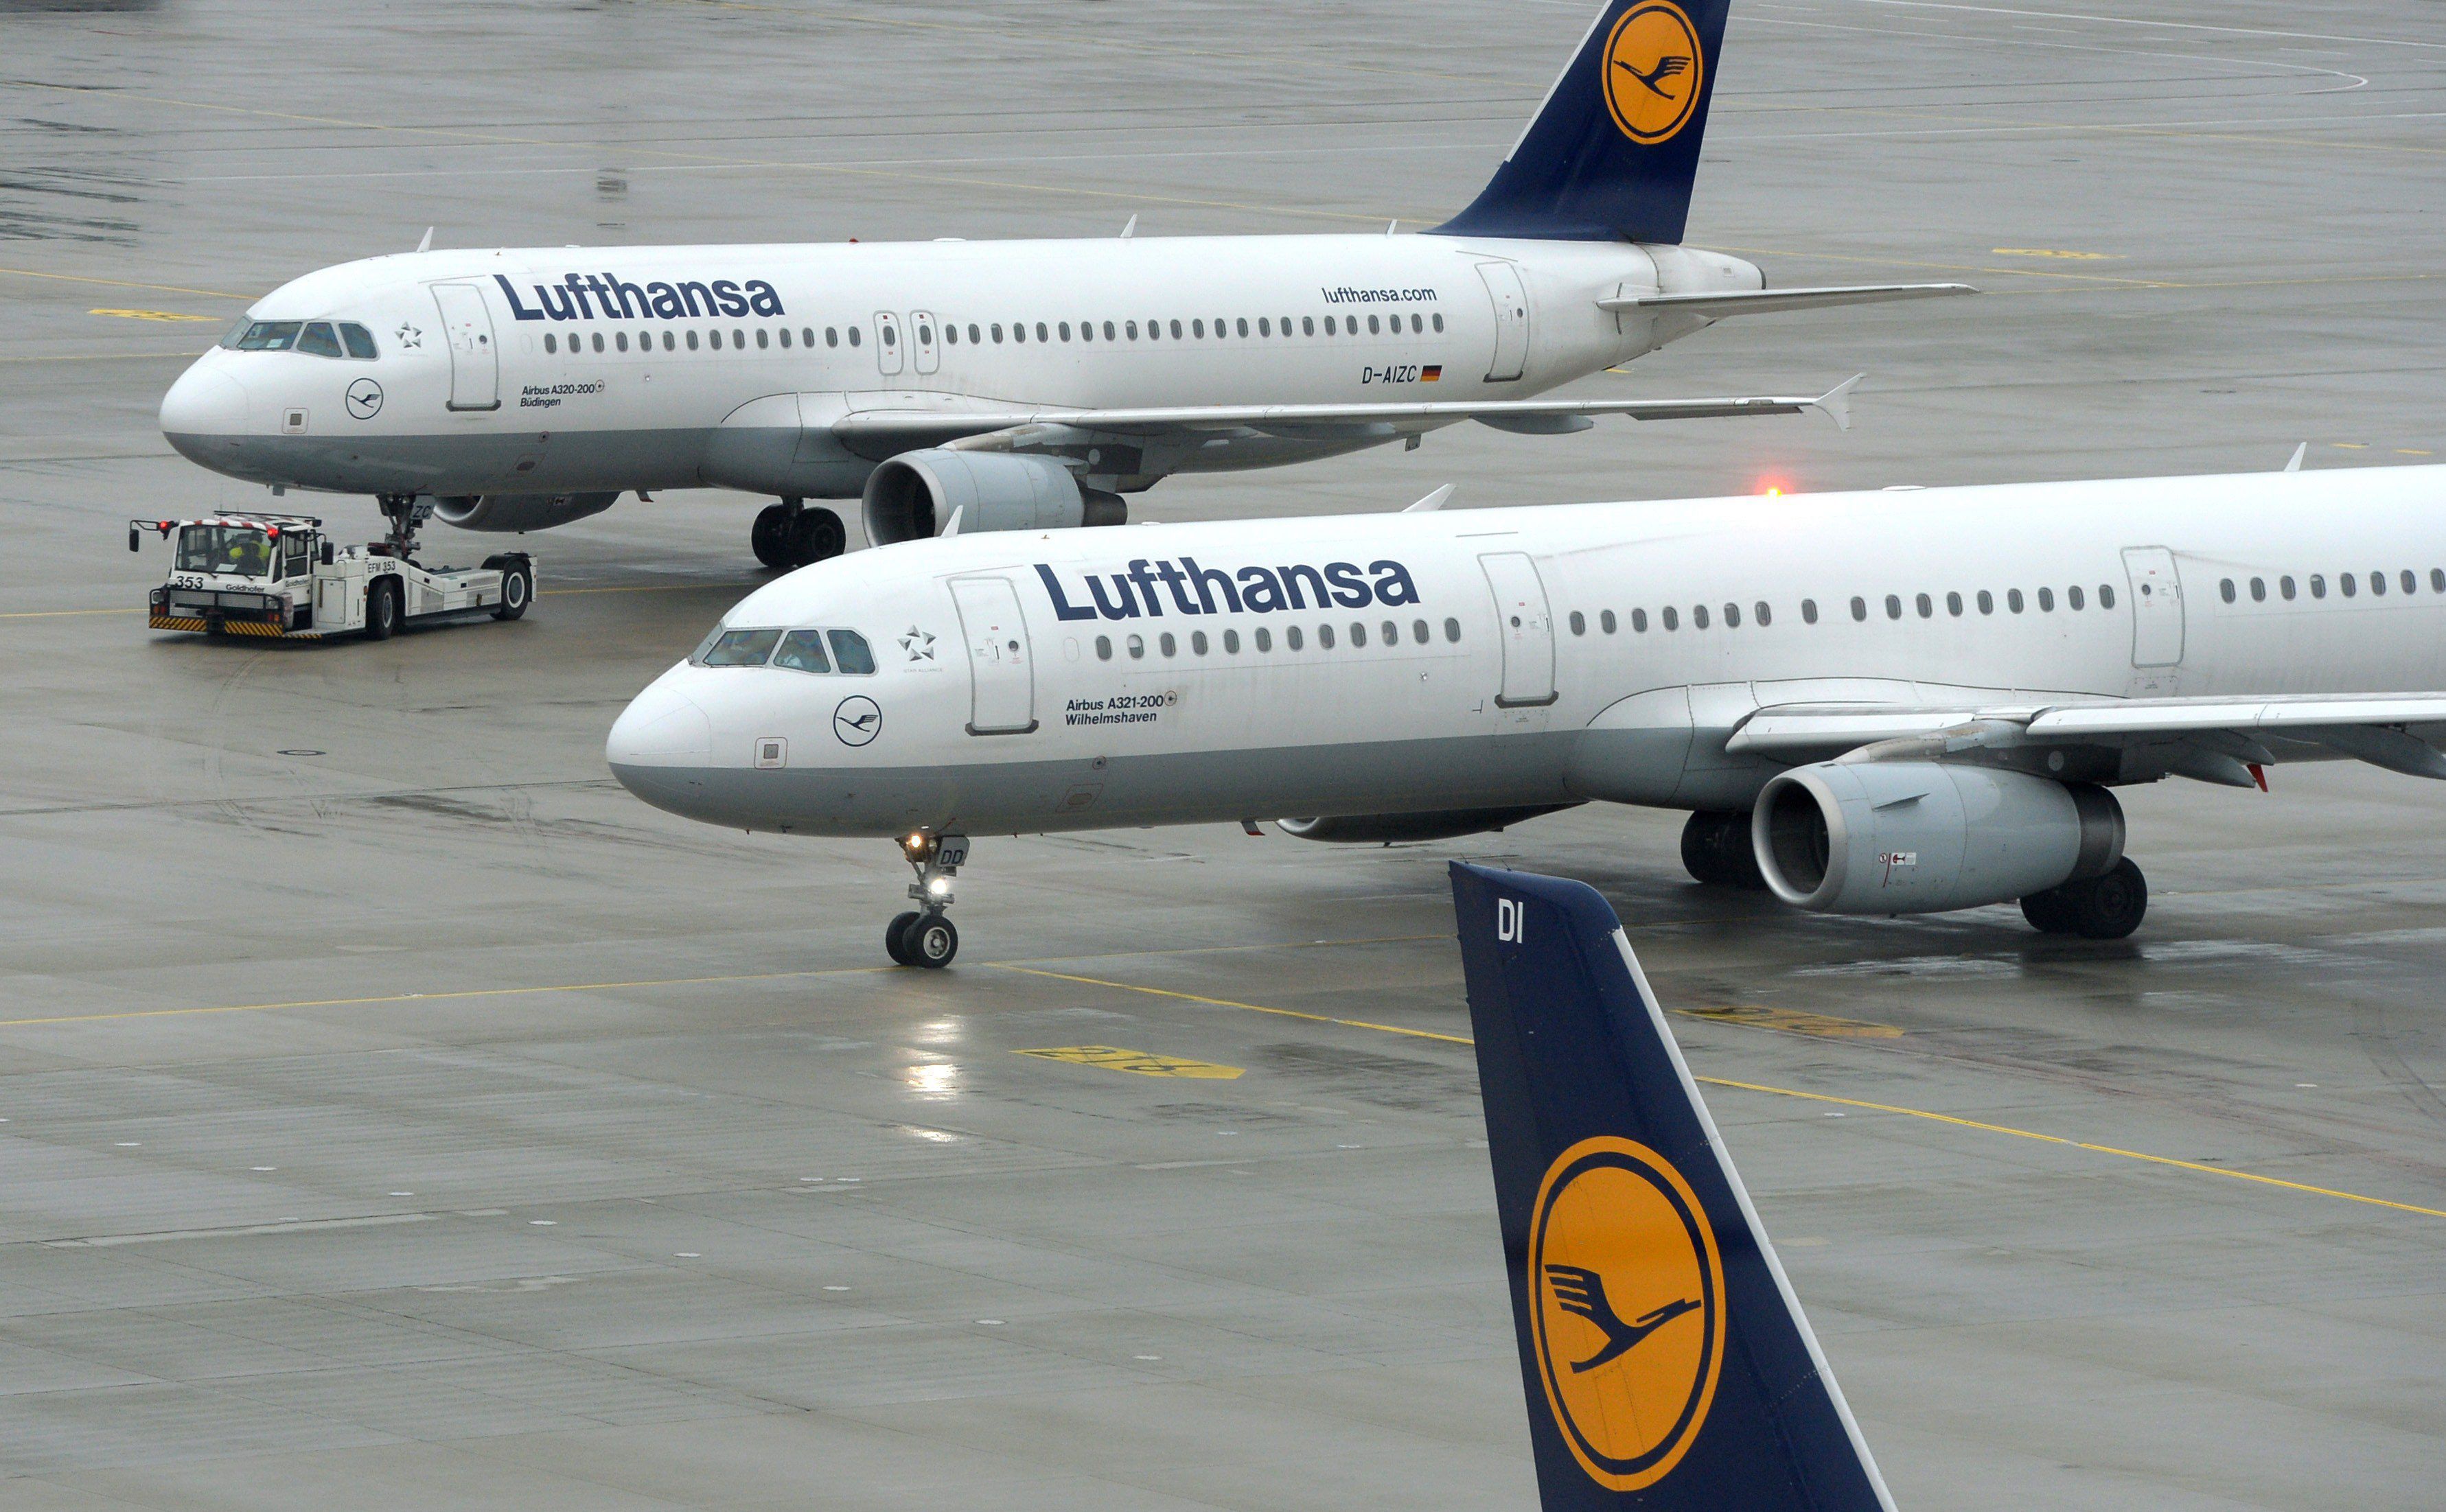 Des militants pour le climat font annuler une soixantaine de vols à l'aéroport de Munich